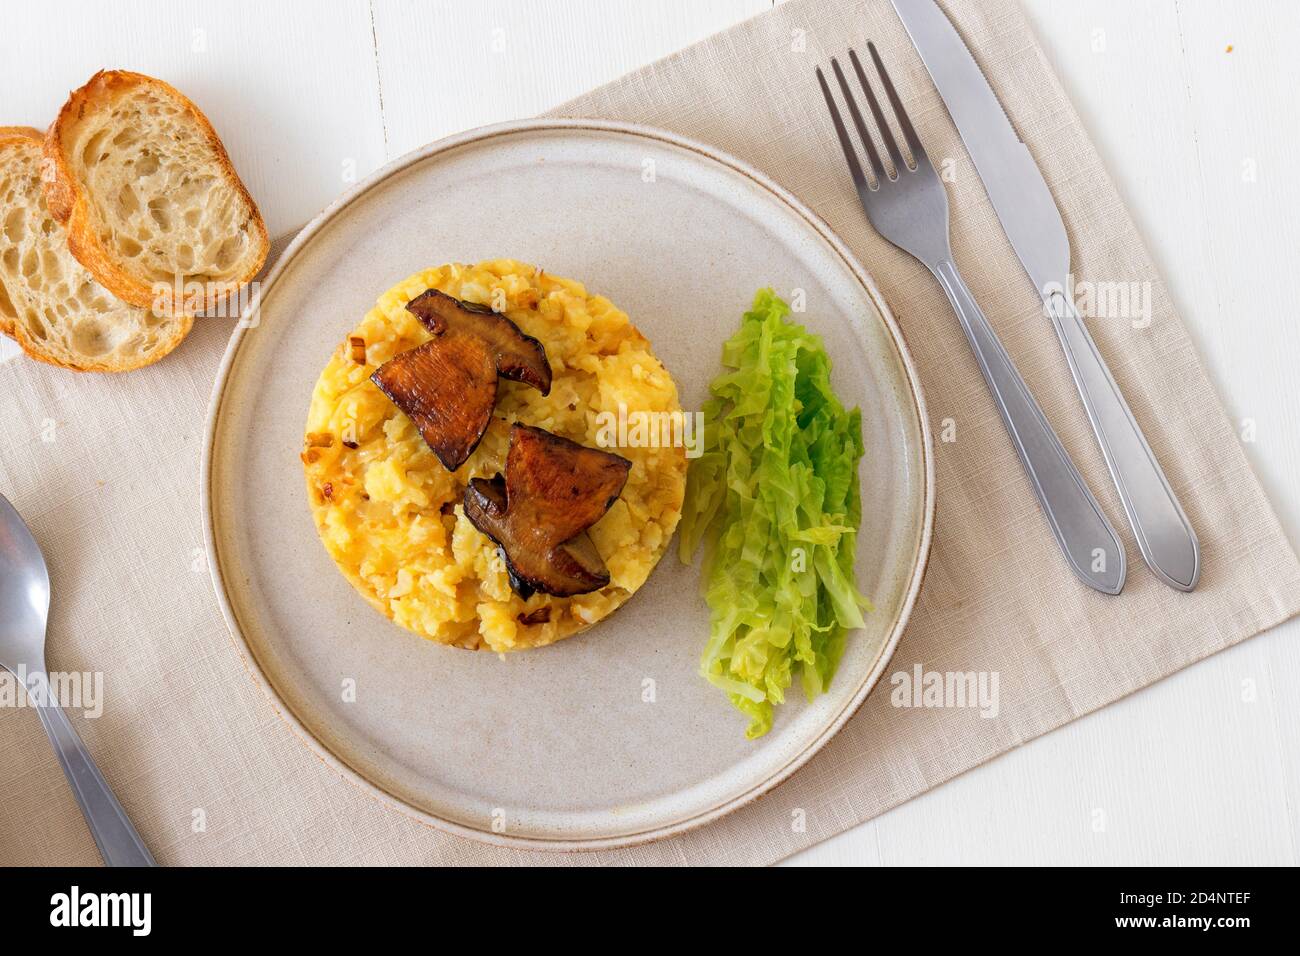 Frisch gerösteter Boletus mit Kartoffelpüree und Grünkohl. Lieblingseason Pilz Mittag-oder Abendessen in der Tschechischen Republik. Stockfoto